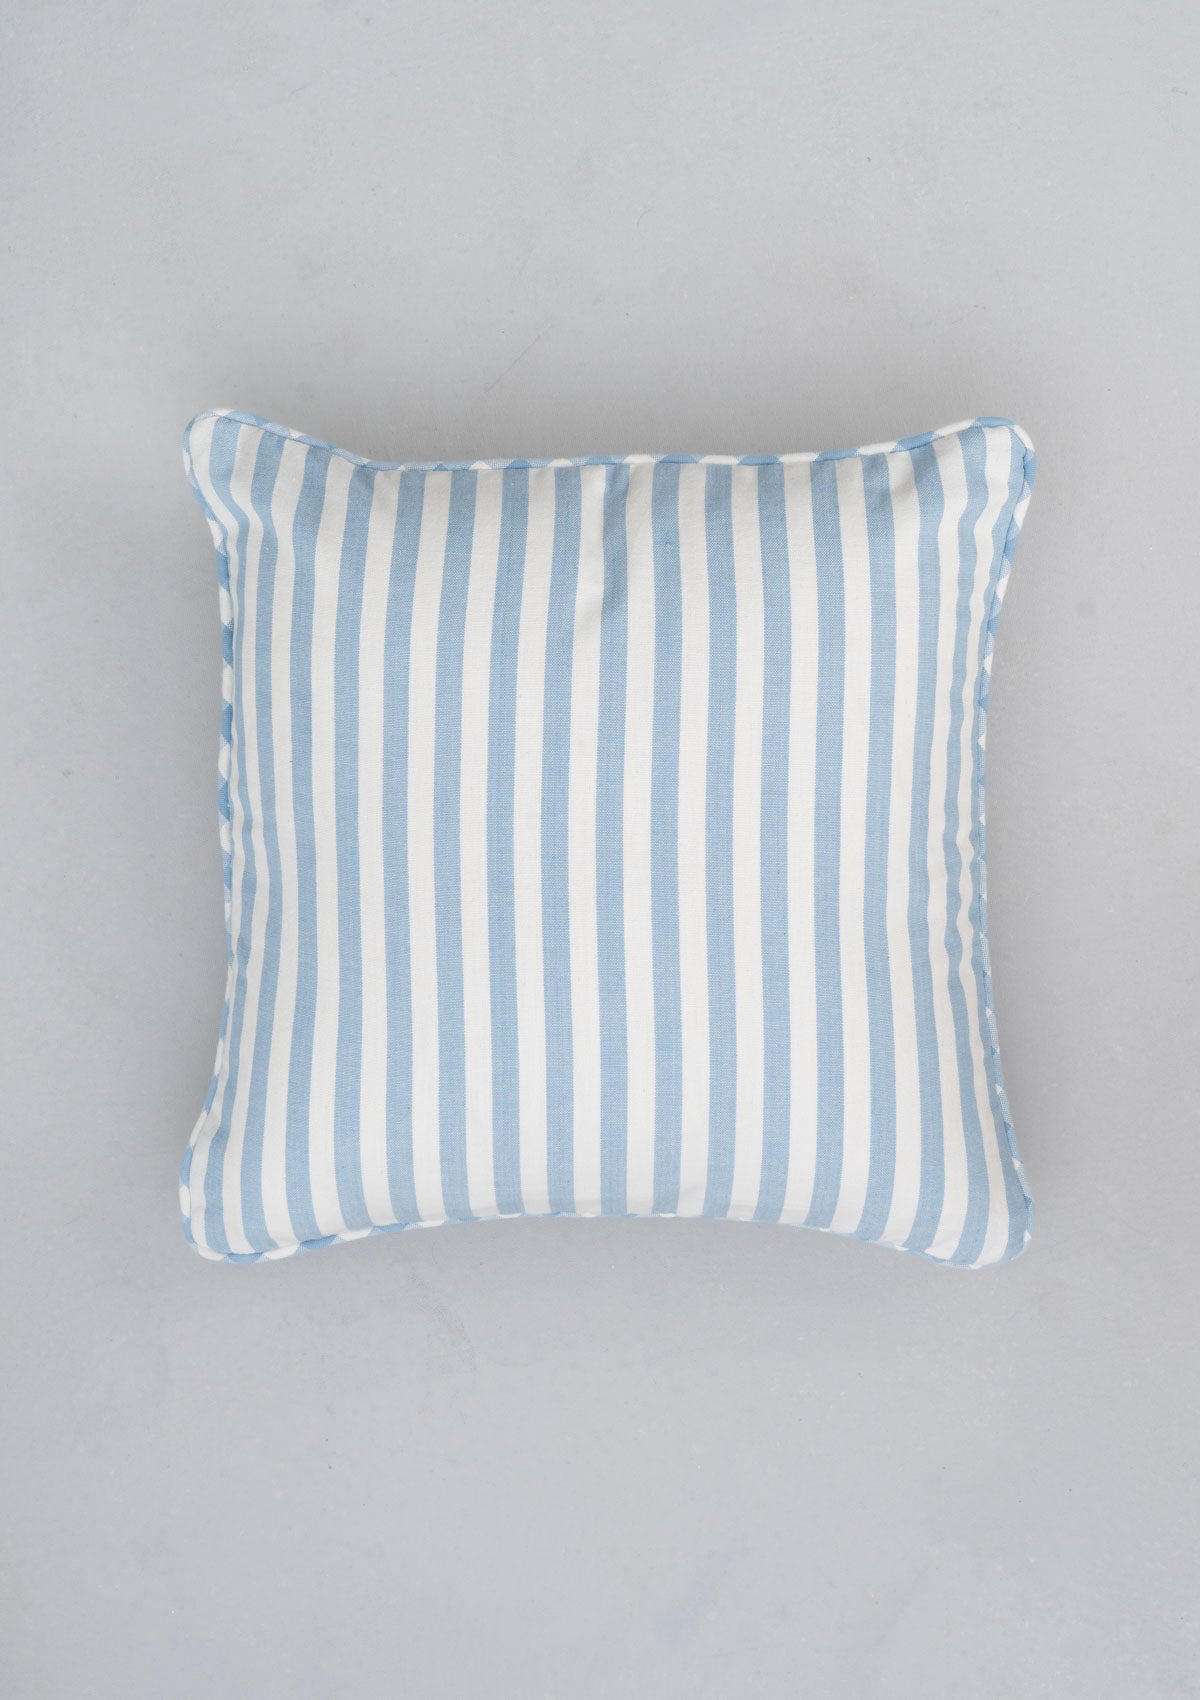 Powder Blue Stripe Woven Cushion Cover - Powder Blue